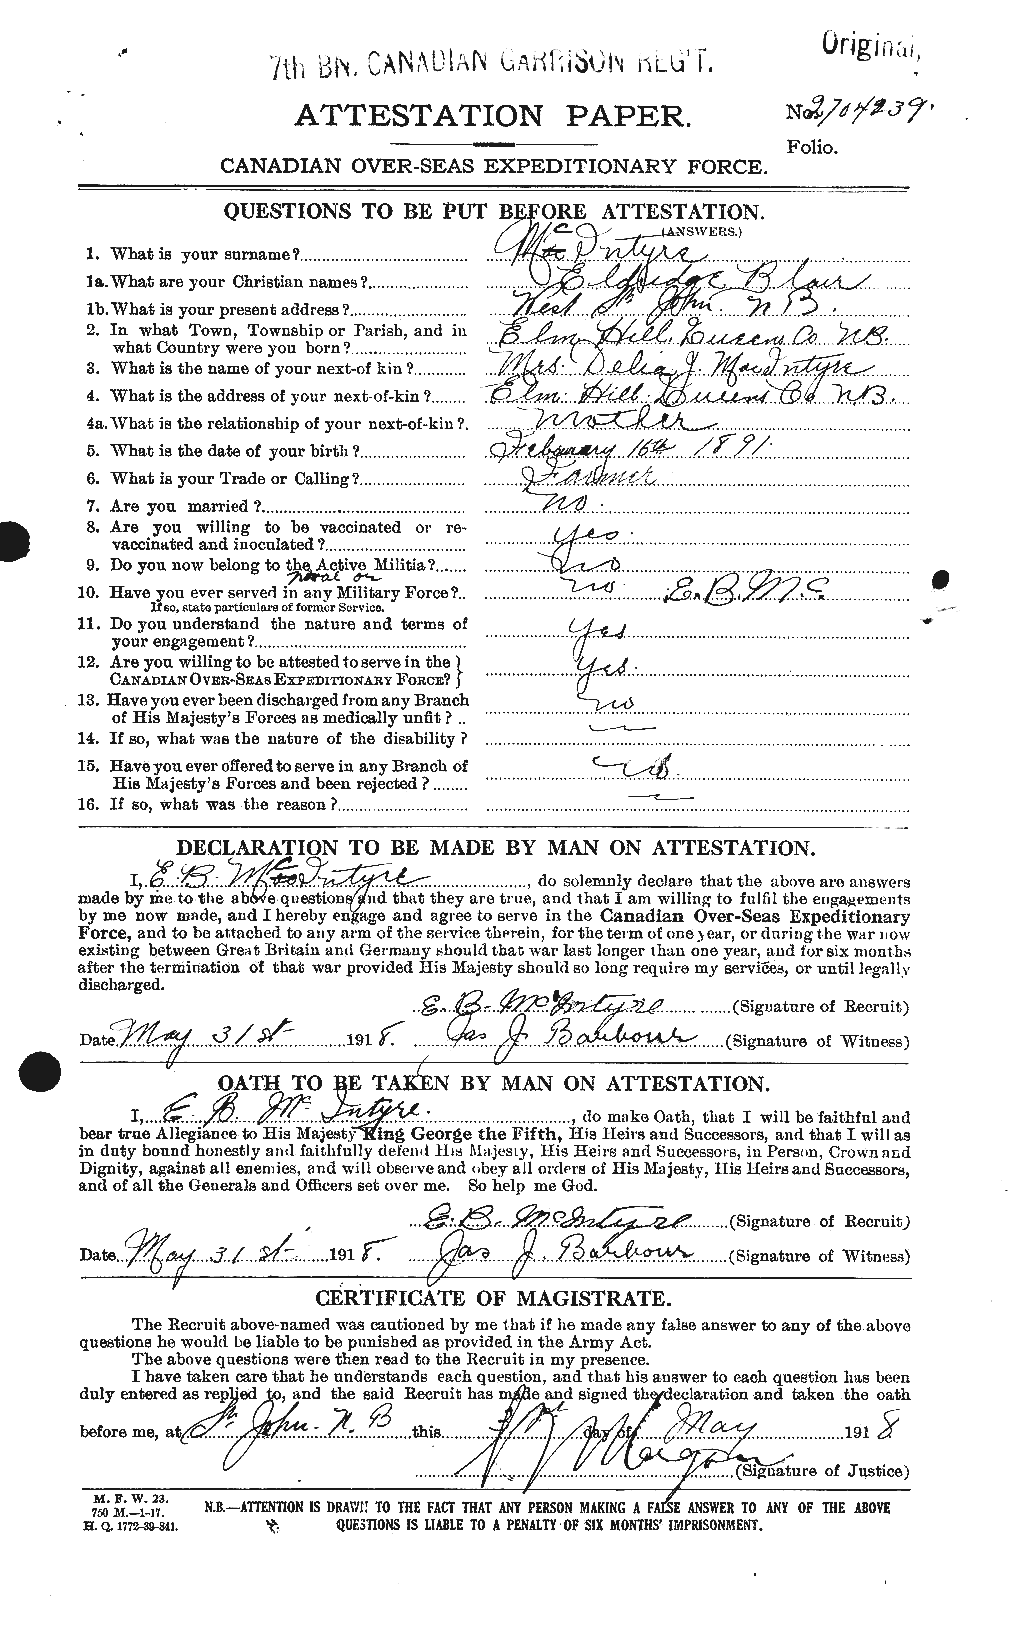 Dossiers du Personnel de la Première Guerre mondiale - CEC 527358a